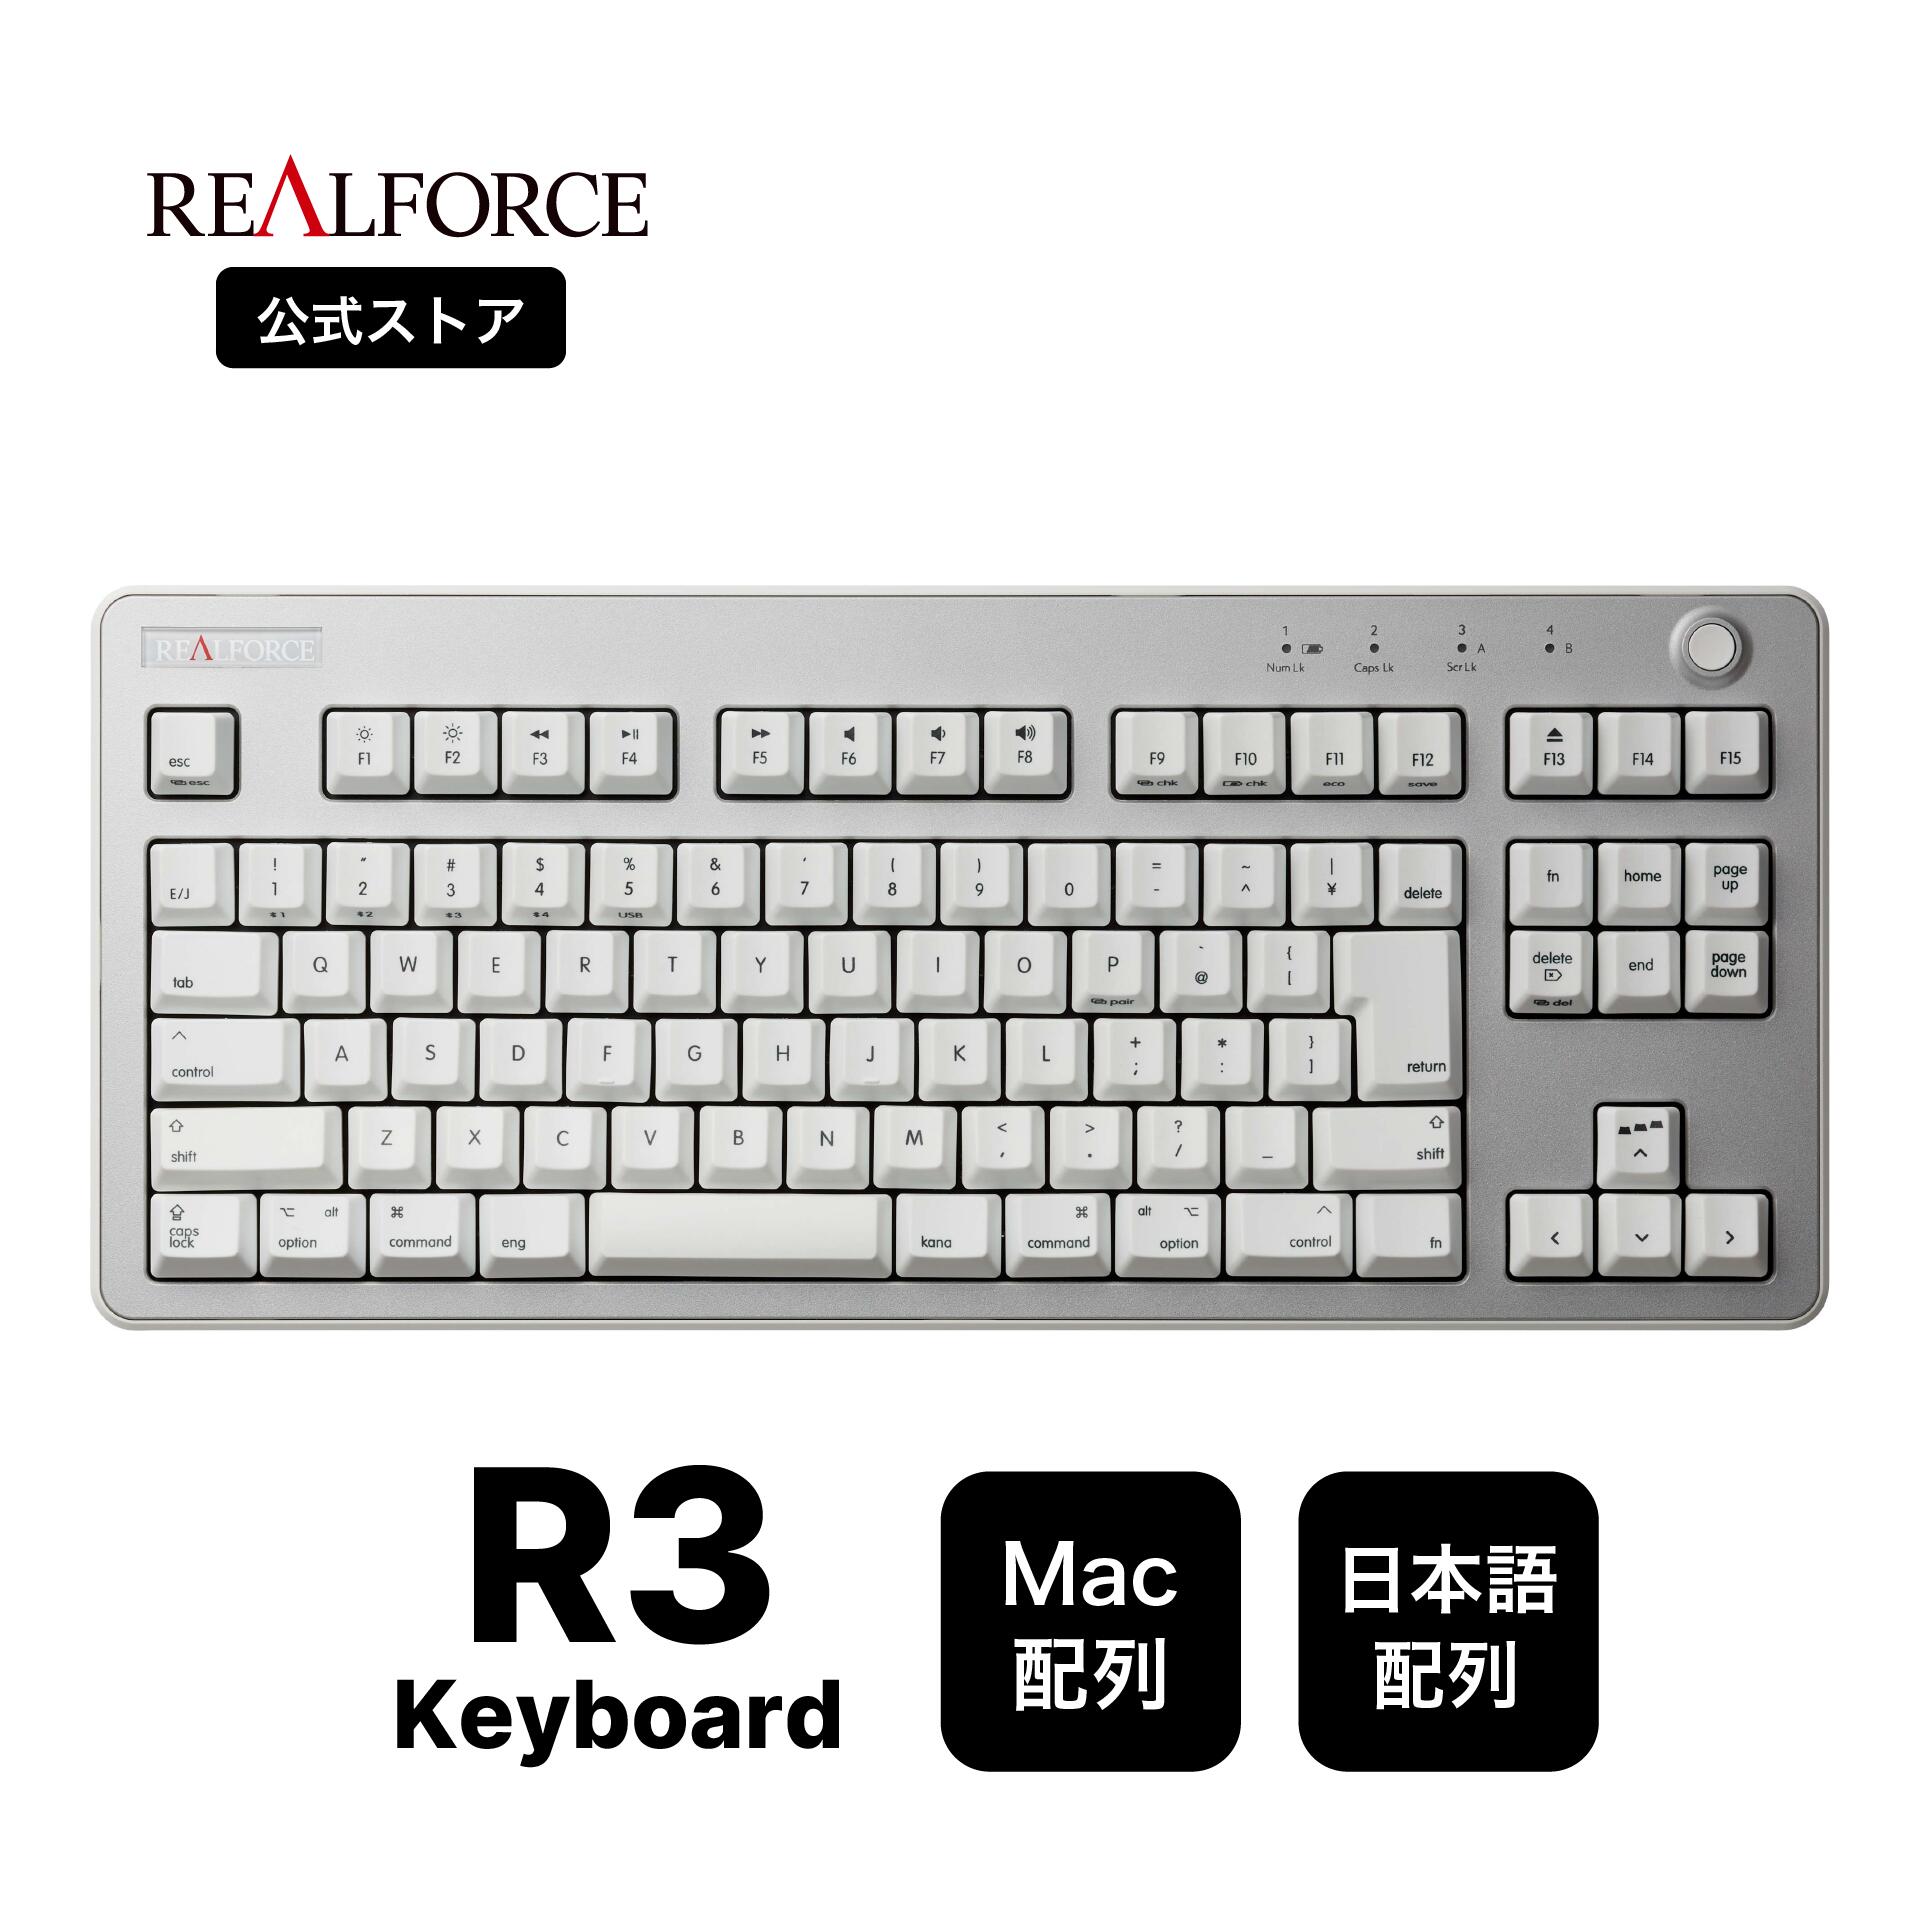 【公式】 REALFORCE R3 キーボード Mac用配列 45g Mac 日本語配列 フルキーボード テンキーレス ライトシルバー ホワイト Bluetooth USB 静音 昇華印刷 ワイヤレス 無線 東プレ リアルフォース